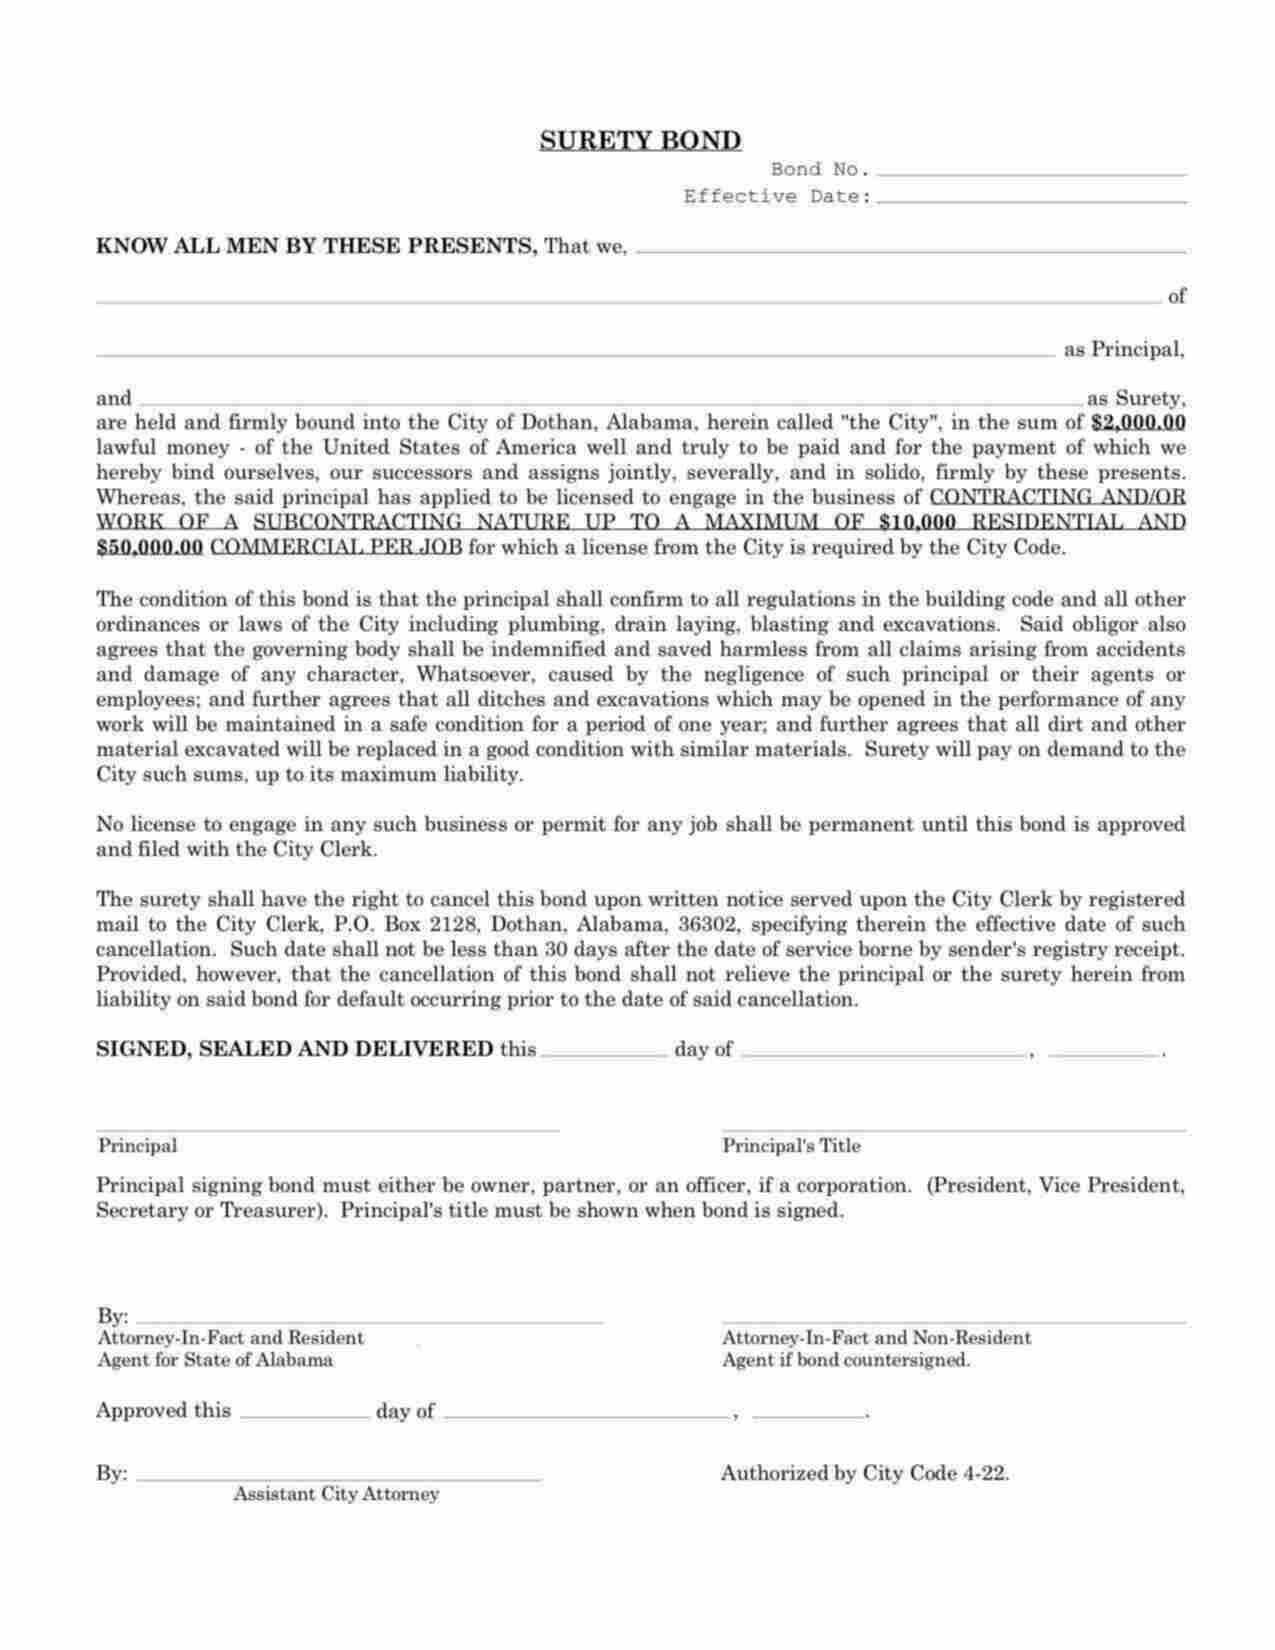 Alabama Contractor/Subcontractor Bond Form